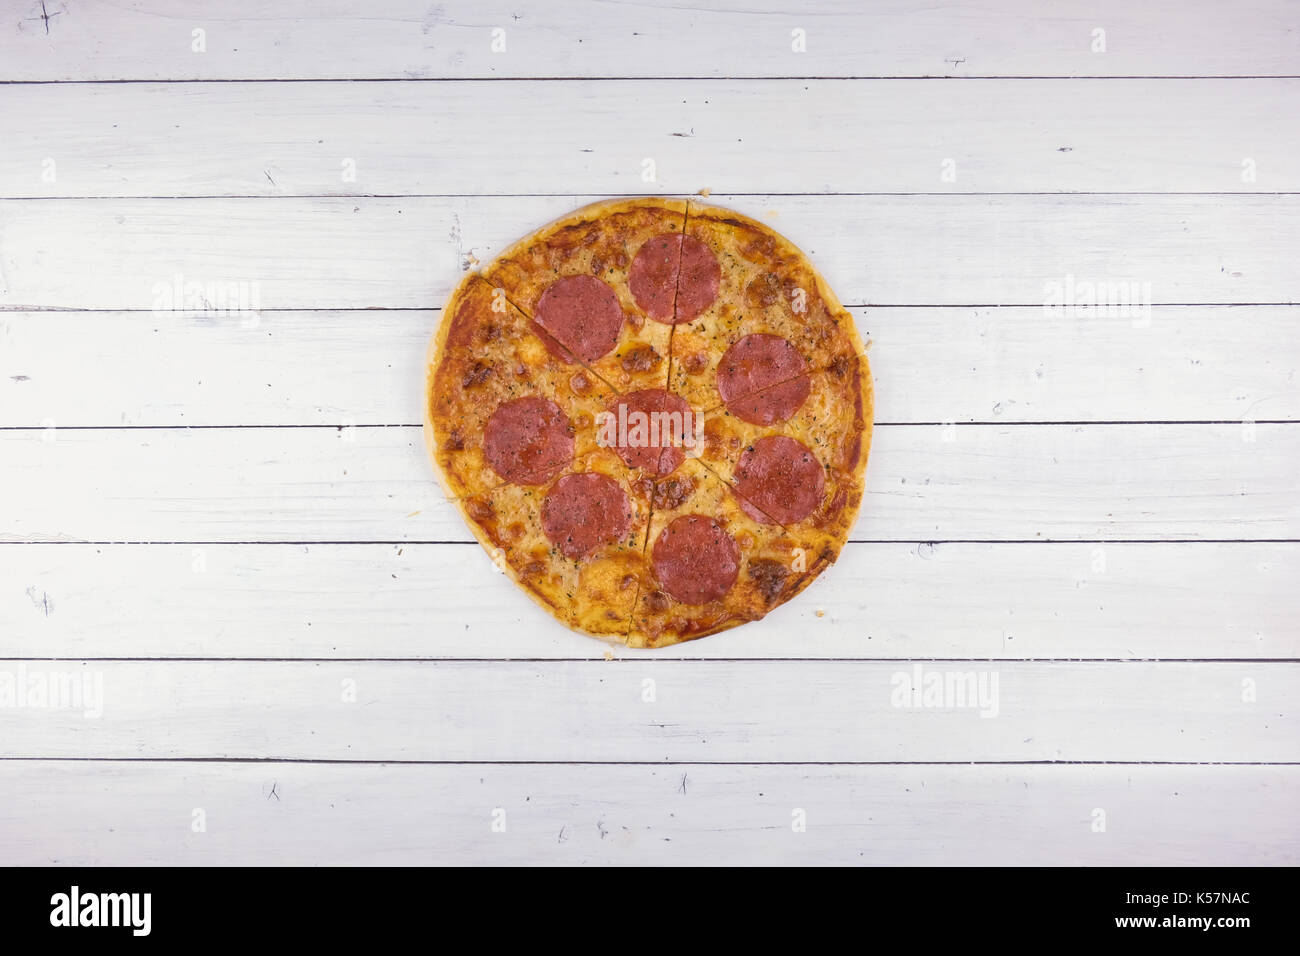 Vue de dessus de la pizza au pepperoni, sur fond de bois blanc Banque D'Images